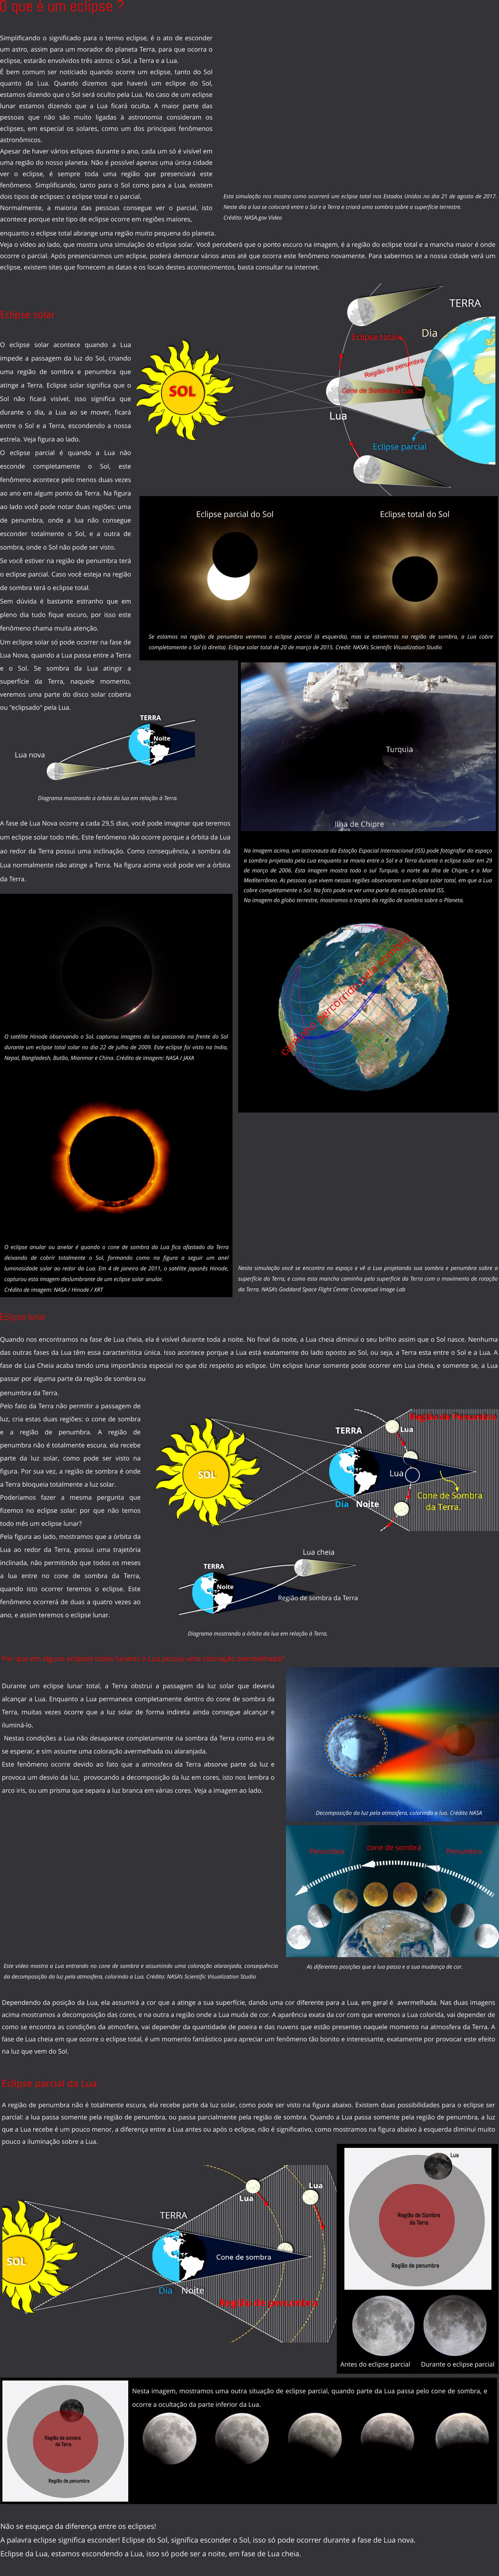 Não se esqueça da diferença entre os eclipses! A palavra eclipse significa esconder! Eclipse do Sol, significa esconder o Sol, isso só pode ocorrer durante a fase de Lua nova. Eclipse da Lua, estamos escondendo a Lua, isso só pode ser a noite, em fase de Lua cheia. O que é um eclipse ? Esta simulação nos mostra como ocorrerá um eclipse total nos Estados Unidos no dia 21 de agosto de 2017. Neste dia a lua se colocará entre o Sol e a Terra e criará uma sombra sobre a superfície terrestre.  Crédito: NASA.gov Video Simplificando o significado para o termo eclipse, é o ato de esconder um astro, assim para um morador do planeta Terra, para que ocorra o eclipse, estarão envolvidos três astros: o Sol, a Terra e a Lua.  É bem comum ser noticiado quando ocorre um eclipse, tanto do Sol quanto da Lua. Quando dizemos que haverá um eclipse do Sol, estamos dizendo que o Sol será oculto pela Lua. No caso de um eclipse lunar estamos dizendo que a Lua ficará oculta. A maior parte das pessoas que não são muito ligadas à astronomia consideram os eclipses, em especial os solares, como um dos principais fenômenos astronômicos. Apesar de haver vários eclipses durante o ano, cada um só é visível em uma região do nosso planeta. Não é possível apenas uma única cidade ver o eclipse, é sempre toda uma região que presenciará este fenômeno. Simplificando, tanto para o Sol como para a Lua, existem dois tipos de eclipses: o eclipse total e o parcial.  Normalmente, a maioria das pessoas consegue ver o parcial, isto acontece porque este tipo de eclipse ocorre em regiões maiores,     enquanto o eclipse total abrange uma região muito pequena do planeta. Veja o vídeo ao lado, que mostra uma simulação do eclipse solar. Você perceberá que o ponto escuro na imagem, é a região do eclipse total e a mancha maior é onde ocorre o parcial. Após presenciarmos um eclipse, poderá demorar vários anos até que ocorra este fenômeno novamente. Para sabermos se a nossa cidade verá um eclipse, existem sites que fornecem as datas e os locais destes acontecimentos, basta consultar na internet. O eclipse anular ou anelar é quando o cone de sombra da Lua fica afastado da Terra deixando de cobrir totalmente o Sol, formando como na figura a seguir um anel luminosidade solar ao redor da Lua. Em 4 de janeiro de 2011, o satélite japonês Hinode, capturou esta imagem deslumbrante de um eclipse solar anular.   Crédito de imagem: NASA / Hinode / XRT O satélite Hinode observando o Sol, capturou imagens da lua passando na frente do Sol durante um eclipse total solar no dia 22 de julho de 2009. Este eclipse foi visto na India, Nepal, Bangladesh, Butão, Mianmar e China. Crédito de imagem: NASA / JAXA Se estamos na região de penumbra veremos o eclipse parcial (à esquerda), mas se estivermos na região de sombra, a Lua cobre completamente o Sol (à direita). Eclipse solar total de 20 de março de 2015. Credit: NASA's Scientific Visualization Studio Eclipse parcial do Sol Eclipse total do Sol Eclipse solar A fase de Lua Nova ocorre a cada 29,5 dias, você pode imaginar que teremos um eclipse solar todo mês. Este fenômeno não ocorre porque a órbita da Lua ao redor da Terra possui uma inclinação. Como consequência, a sombra da Lua normalmente não atinge a Terra. Na figura acima você pode ver a órbita da Terra.   caminho percorrido pela sombra  Um eclipse solar só pode ocorrer na fase de Lua Nova, quando a Lua passa entre a Terra e o Sol. Se sombra da Lua atingir a superfície da Terra, naquele momento, veremos uma parte do disco solar coberta ou "eclipsado" pela Lua.  Lua nova Diagrama mostrando a órbita da lua em relação à Terra. Na imagem acima, um astronauta da Estação Espacial Internacional (ISS) pode fotografar do espaço a sombra projetada pela Lua enquanto se movia entre o Sol e a Terra durante o eclipse solar em 29 de março de 2006. Esta imagem mostra todo o sul Turquia, o norte da ilha de Chipre, e o Mar Mediterrâneo. As pessoas que vivem nessas regiões observaram um eclipse solar total, em que a Lua cobre completamente o Sol. Na foto pode-se ver uma parte da estação orbital ISS.  Na imagem do globo terrestre, mostramos o trajeto da região de sombra sobre o Planeta.  Nesta simulação você se encontra no espaço e vê a Lua projetando sua sombra e penumbra sobre a superfície da Terra, e como esta mancha caminha pela superfície da Terra com o movimento de rotação da Terra. NASA's Goddard Space Flight Center Conceptual Image Lab  O eclipse solar acontece quando a Lua impede a passagem da luz do Sol, criando uma região de sombra e penumbra que atinge a Terra. Eclipse solar significa que o Sol não ficará visível, isso significa que durante o dia, a Lua ao se mover, ficará entre o Sol e a Terra, escondendo a nossa estrela. Veja figura ao lado. O eclipse parcial é quando a Lua não esconde completamente o Sol, este fenômeno acontece pelo menos duas vezes ao ano em algum ponto da Terra. Na figura ao lado você pode notar duas regiões: uma de penumbra, onde a lua não consegue esconder totalmente o Sol, e a outra de sombra, onde o Sol não pode ser visto. Se você estiver na região de penumbra terá o eclipse parcial. Caso você esteja na região de sombra terá o eclipse total. Sem dúvida é bastante estranho que em pleno dia tudo fique escuro, por isso este fenômeno chama muita atenção. cone de sombra Penumbra As diferentes posições que a lua passa e a sua mudança de cor. Durante um eclipse lunar total, a Terra obstrui a passagem da luz solar que deveria alcançar a Lua. Enquanto a Lua permanece completamente dentro do cone de sombra da Terra, muitas vezes ocorre que a luz solar de forma indireta ainda consegue alcançar e iluminá-lo.  Nestas condições a Lua não desaparece completamente na sombra da Terra como era de se esperar, e sim assume uma coloração avermelhada ou alaranjada.  Este fenômeno ocorre devido ao fato que a atmosfera da Terra absorve parte da luz e provoca um desvio da luz,  provocando a decomposição da luz em cores, isto nos lembra o  arco iris, ou um prisma que separa a luz branca em várias cores. Veja a imagem ao lado. Por que em alguns eclipses totais lunares a Lua possui uma coloração avermelhada?  Este video mostra a Lua entrando no cone de sombra e assumindo uma coloração alaranjada, consequência da decomposição da luz pela atmosfera, colorindo a Lua. Crédito: NASA's Scientific Visualization Studio Penumbra Eclipse parcial da Lua Região de penumbra A região de penumbra não é totalmente escura, ela recebe parte da luz solar, como pode ser visto na figura abaixo. Existem duas possibilidades para o eclipse ser parcial: a lua passa somente pela região de penumbra, ou passa parcialmente pela região de sombra. Quando a Lua passa somente pela região de penumbra, a luz que a Lua recebe é um pouco menor, a diferença entre a Lua antes ou após o eclipse, não é significativo, como mostramos na figura abaixo à esquerda diminui muito pouco a iluminação sobre a Lua.    Antes do eclipse parcial Durante o eclipse parcial Nesta imagem, mostramos uma outra situação de eclipse parcial, quando parte da Lua passa pelo cone de sombra, e ocorre a ocultação da parte inferior da Lua. Decomposição da luz pela atmosfera, colorindo a lua. Crédito NASA Quando nos encontramos na fase de Lua cheia, ela é visível durante toda a noite. No final da noite, a Lua cheia diminui o seu brilho assim que o Sol nasce. Nenhuma das outras fases da Lua têm essa característica única. Isso acontece porque a Lua está exatamente do lado oposto ao Sol, ou seja, a Terra esta entre o Sol e a Lua. A fase de Lua Cheia acaba tendo uma importância especial no que diz respeito ao eclipse. Um eclipse lunar somente pode ocorrer em Lua cheia, e somente se, a Lua passar por alguma parte da região de sombra ou   penumbra da Terra. Pelo fato da Terra não permitir a passagem de luz, cria estas duas regiões: o cone de sombra e a região de penumbra. A região de penumbra não é totalmente escura, ela recebe parte da luz solar, como pode ser visto na figura. Por sua vez, a região de sombra é onde a Terra bloqueia totalmente a luz solar. Poderiamos fazer a mesma pergunta que fizemos no eclipse solar: por que não temos todo mês um eclipse lunar? Pela figura ao lado, mostramos que a órbita da Lua ao redor da Terra, possui uma trajetória inclinada, não permitindo que todos os meses a lua entre no cone de sombra da Terra, quando isto ocorrer teremos o eclipse. Este fenômeno ocorrerá de duas a quatro vezes ao ano, e assim teremos o eclipse lunar.   Lua cheia Região de sombra da Terra Diagrama mostrando a órbita da lua em relação à Terra. Eclipse lunar Dependendo da posição da Lua, ela assumirá a cor que a atinge a sua superfície, dando uma cor diferente para a Lua, em geral é  avermelhada. Nas duas imagens acima mostramos a decomposição das cores, e na outra a região onde a Lua muda de cor. A aparência exata da cor com que veremos a Lua colorida, vai depender de como se encontra as condições da atmosfera, vai depender da quantidade de poeira e das nuvens que estão presentes naquele momento na atmosfera da Terra. A fase de Lua cheia em que ocorre o eclipse total, é um momento fantástico para apreciar um fenômeno tão bonito e interessante, exatamente por provocar este efeito na luz que vem do Sol.